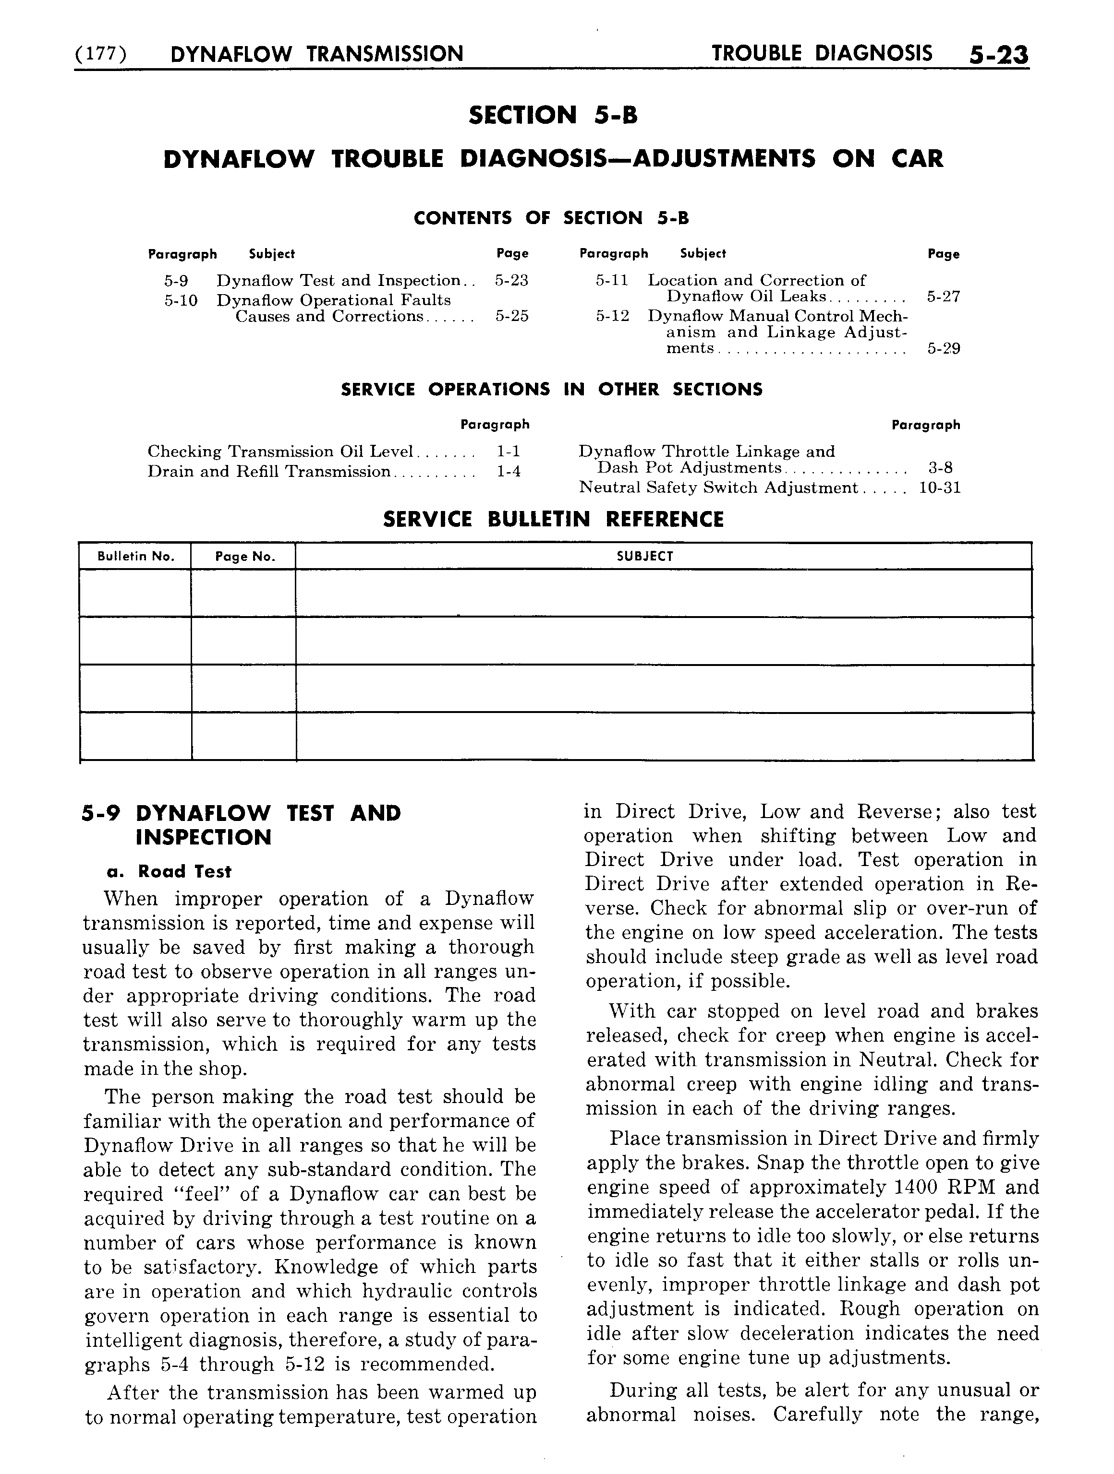 n_06 1954 Buick Shop Manual - Dynaflow-023-023.jpg